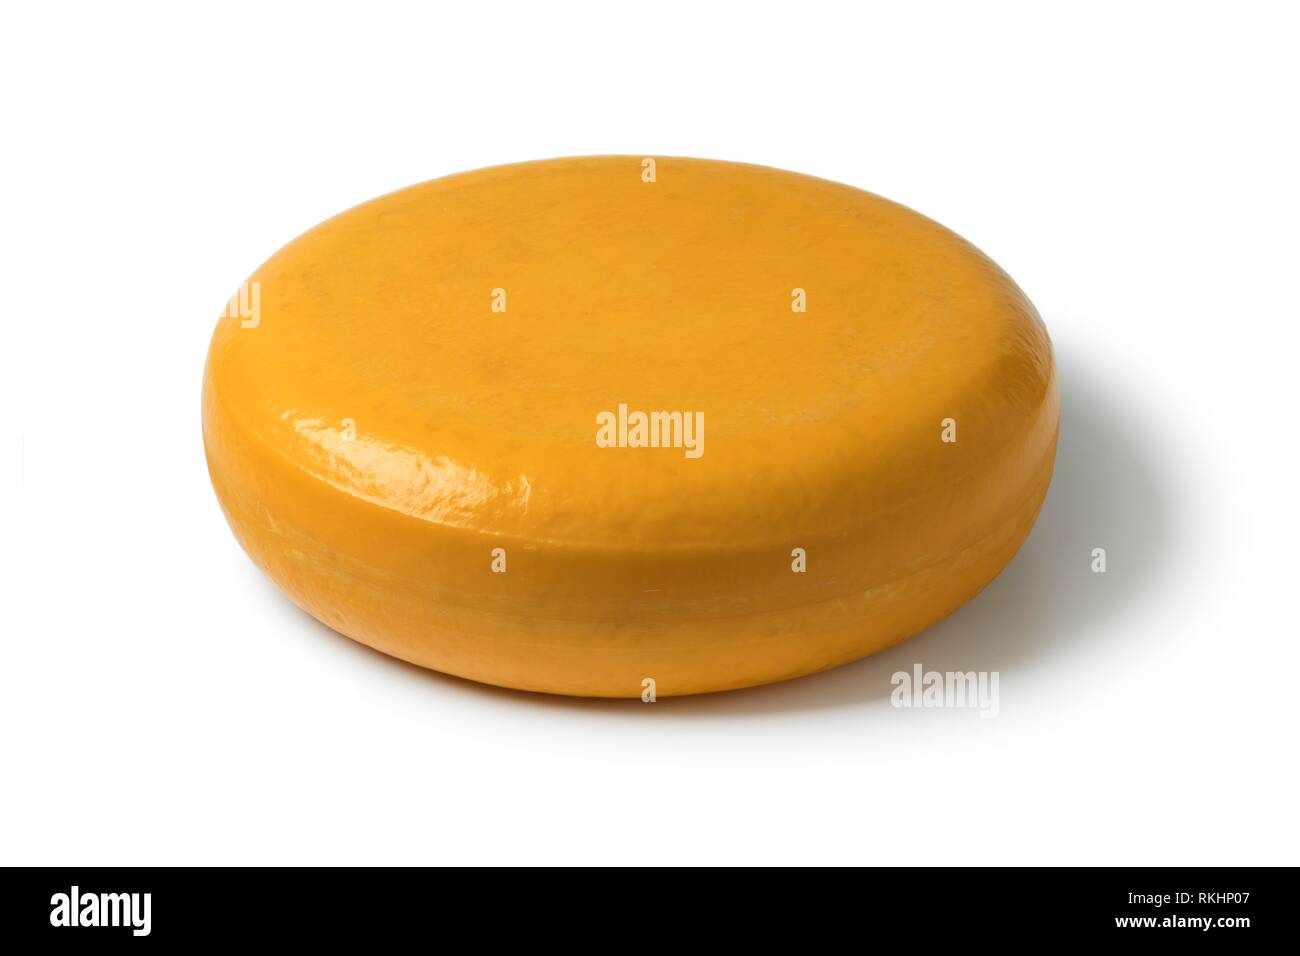 Todo el queso Gouda amarillo redondo aislado sobre fondo blanco. Foto de stock